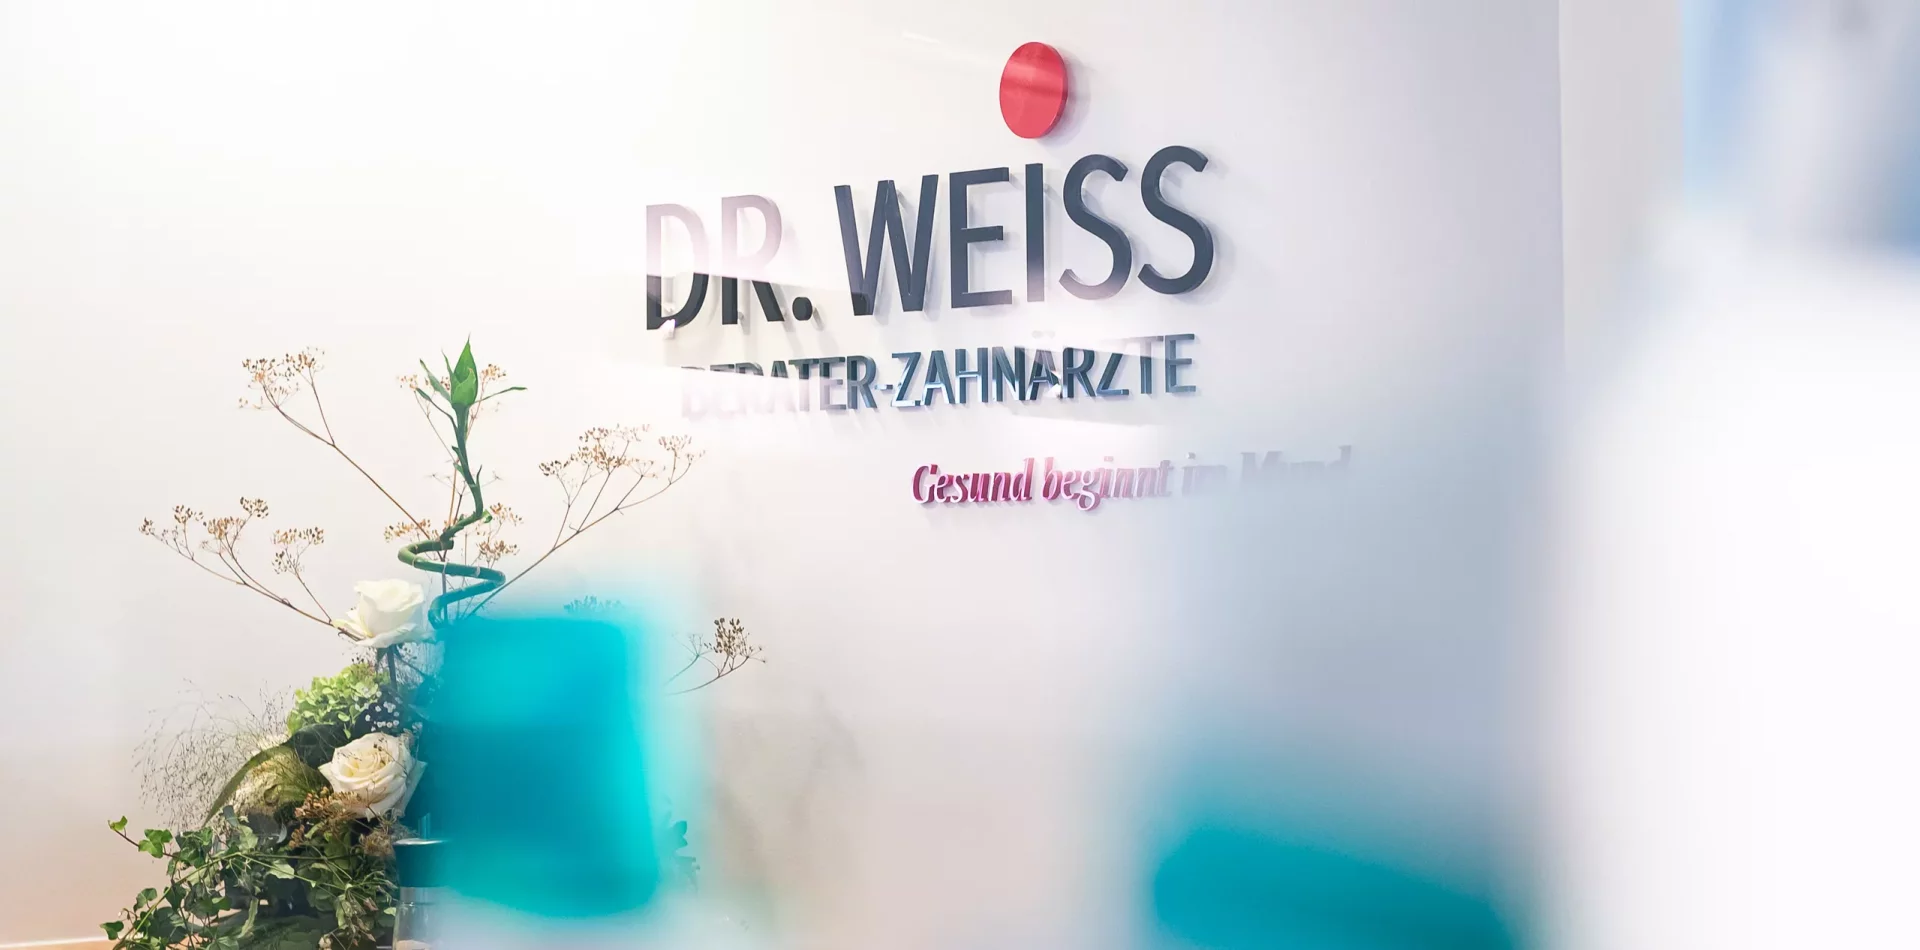 Berater-Zahnärzte Dr. Weiss